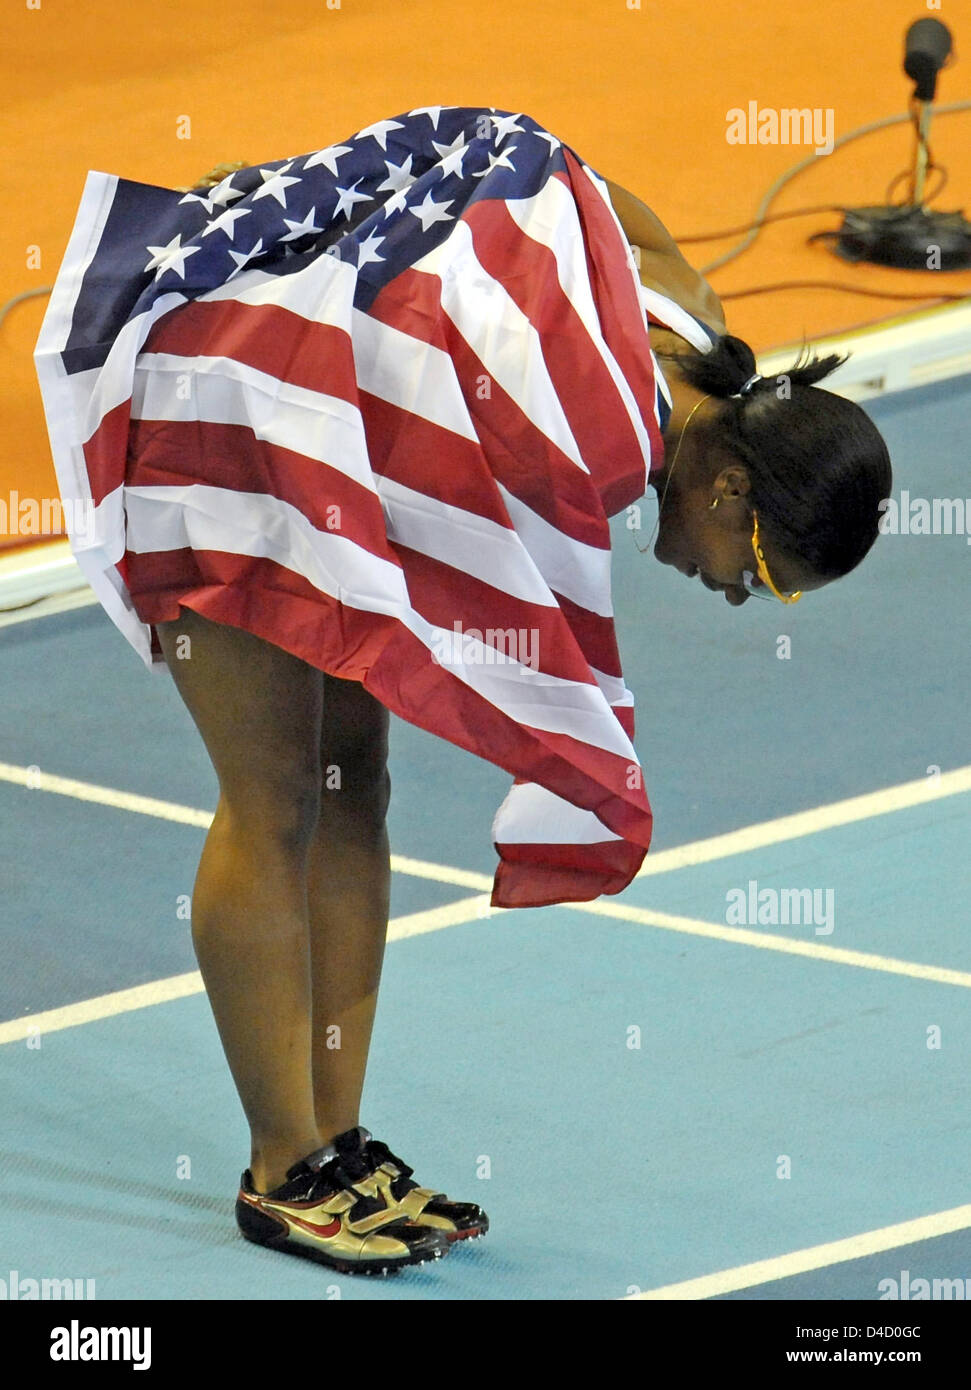 US-Athleten Angela Williams Bögen nach dem Gewinn der 60m Frauen Finale am 12. IAAF World Indoor Championships in Athletics in Valencia, Spanien, 7. März 2008. Foto: GERO BRELOER Stockfoto